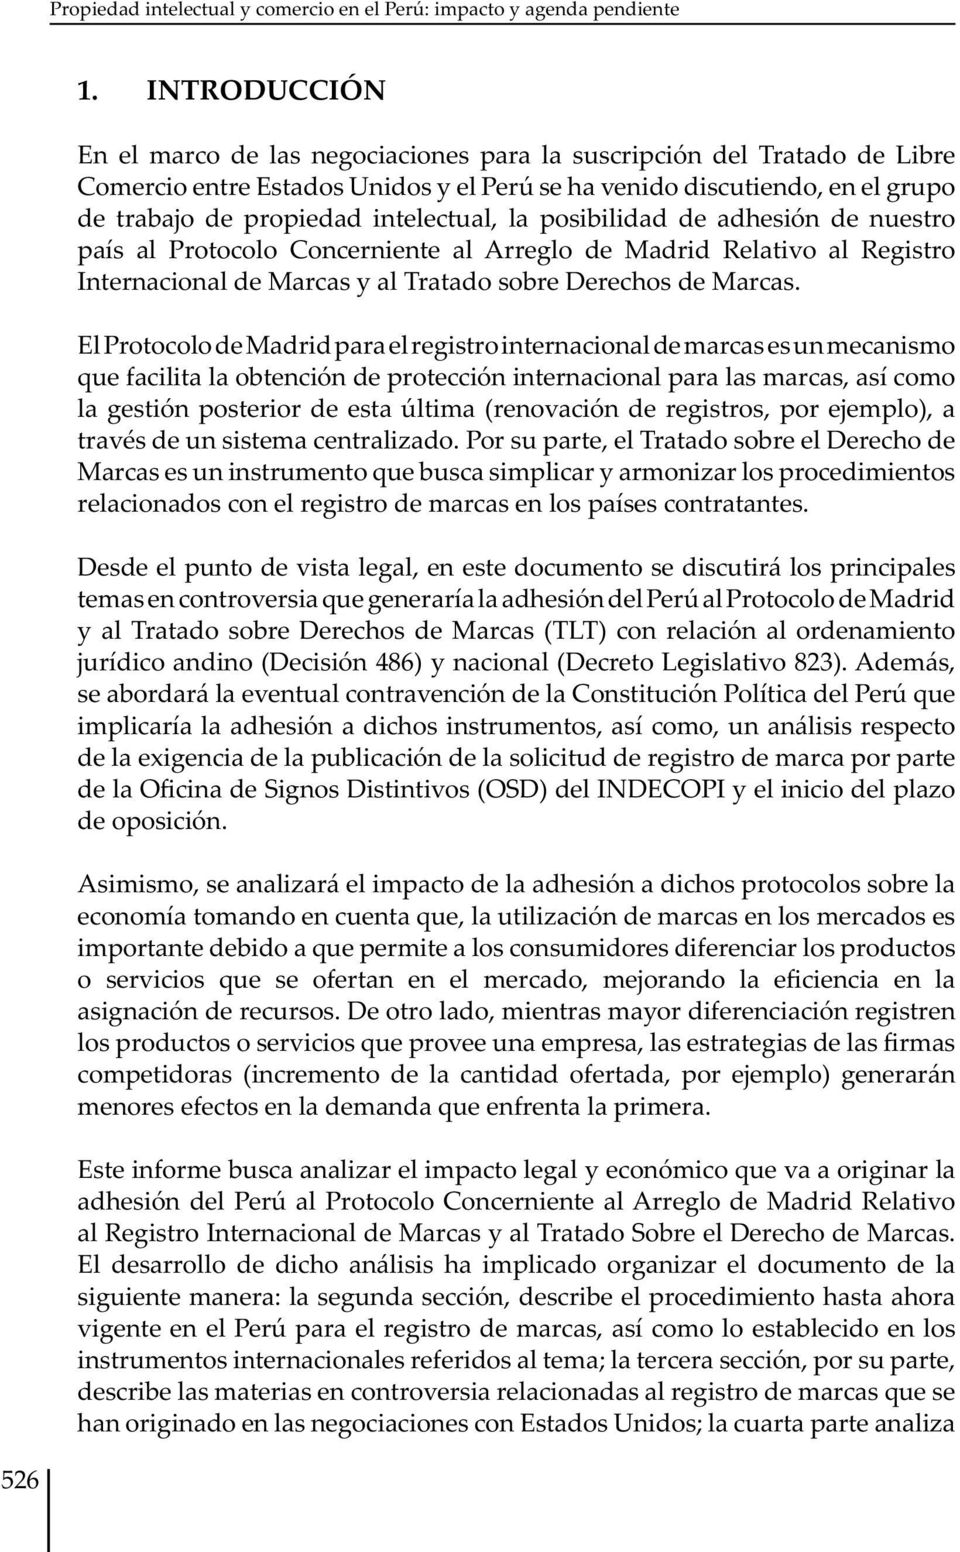 intelectual, la posibilidad de adhesión de nuestro país al Protocolo Concerniente al Arreglo de Madrid Relativo al Registro Internacional de Marcas y al Tratado sobre Derechos de Marcas.